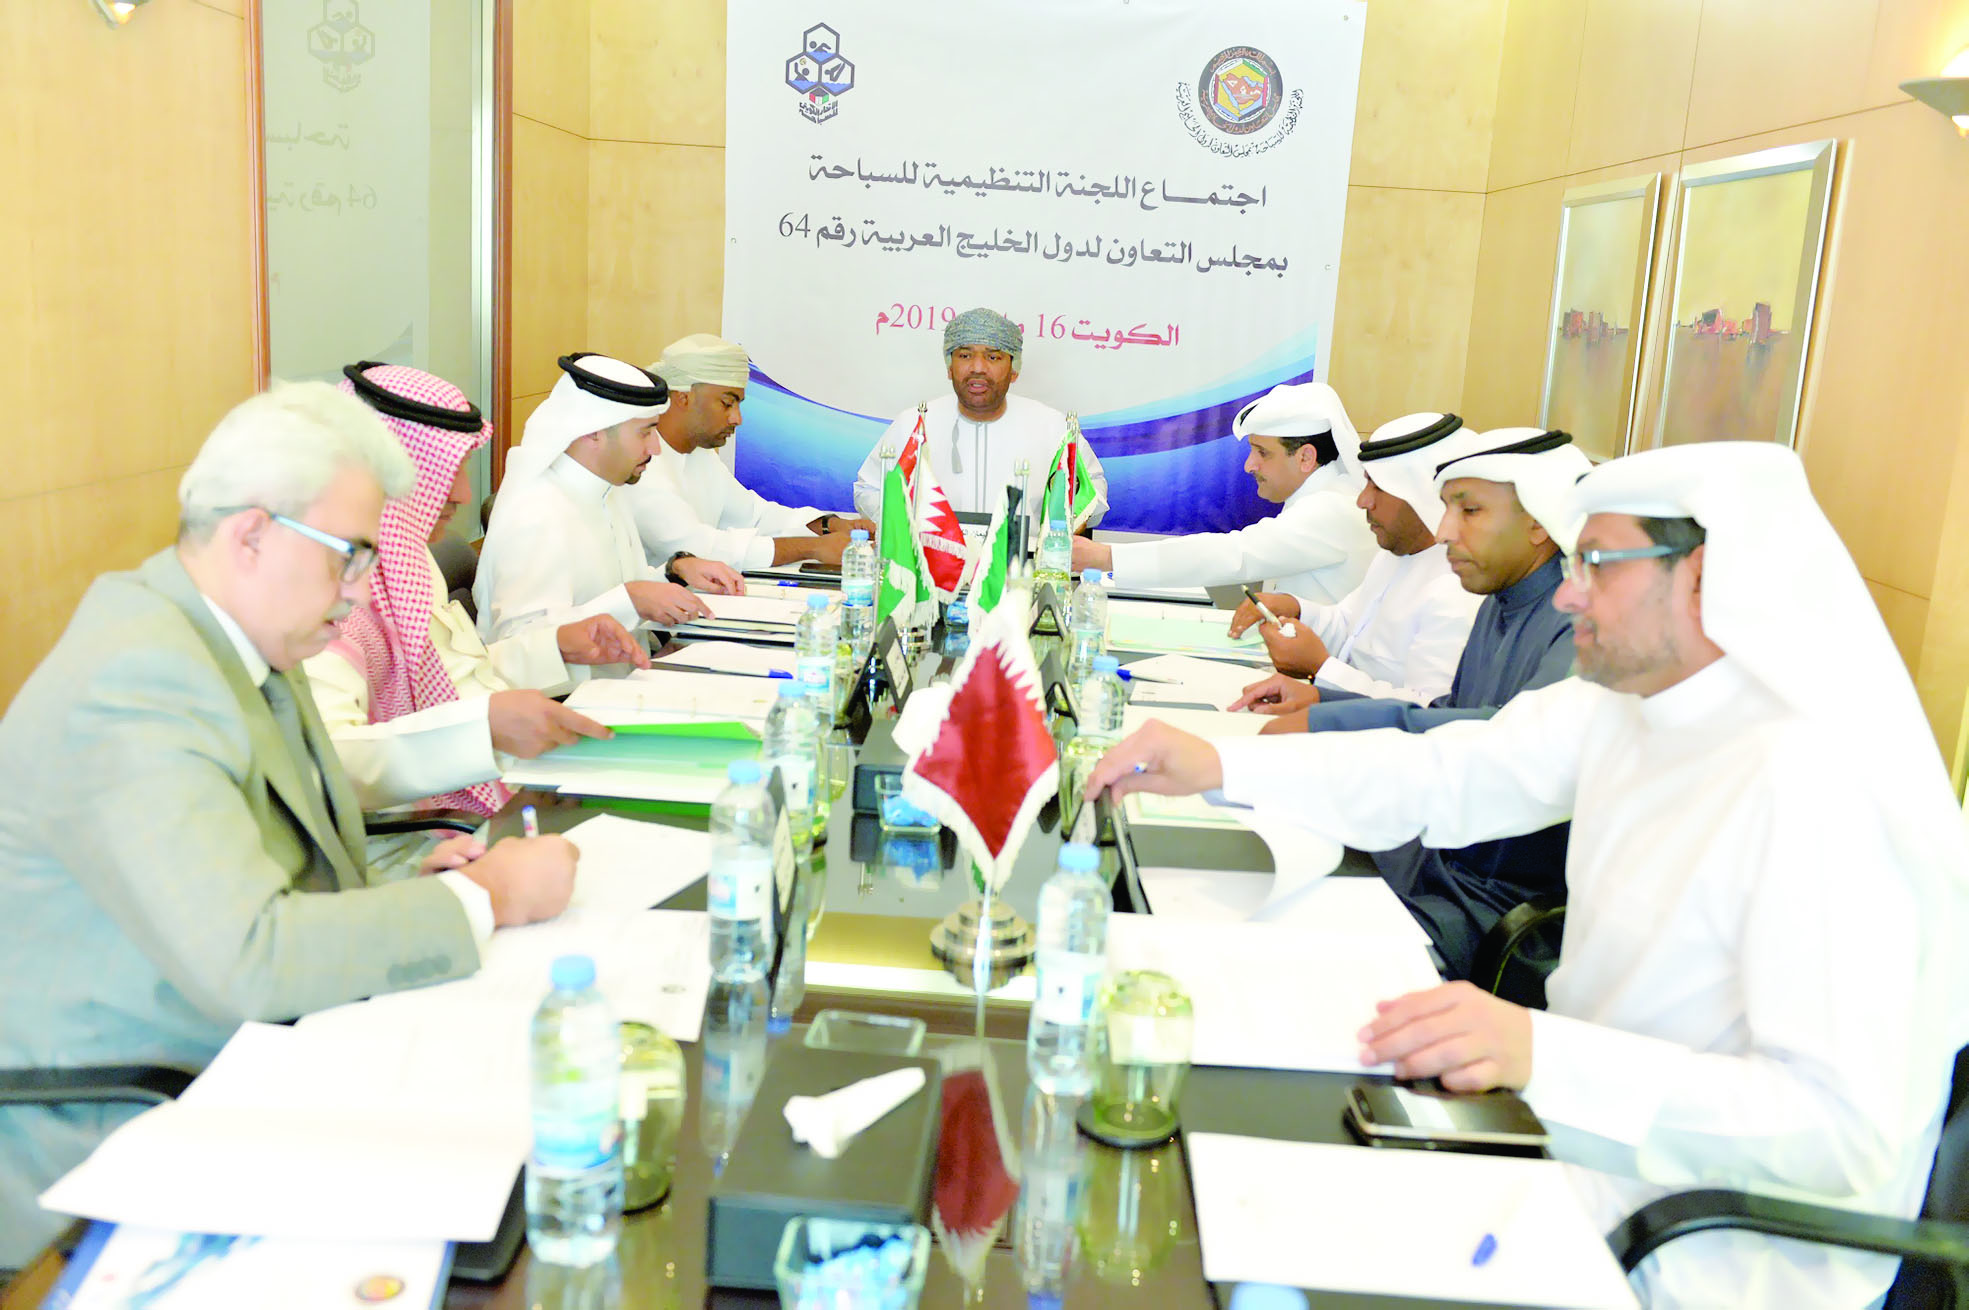 ناقش الاجتماع عددا من الموضوعاتالكشري يترأس اجتماع اللجنة التنظيمية للسباحة في الكويت